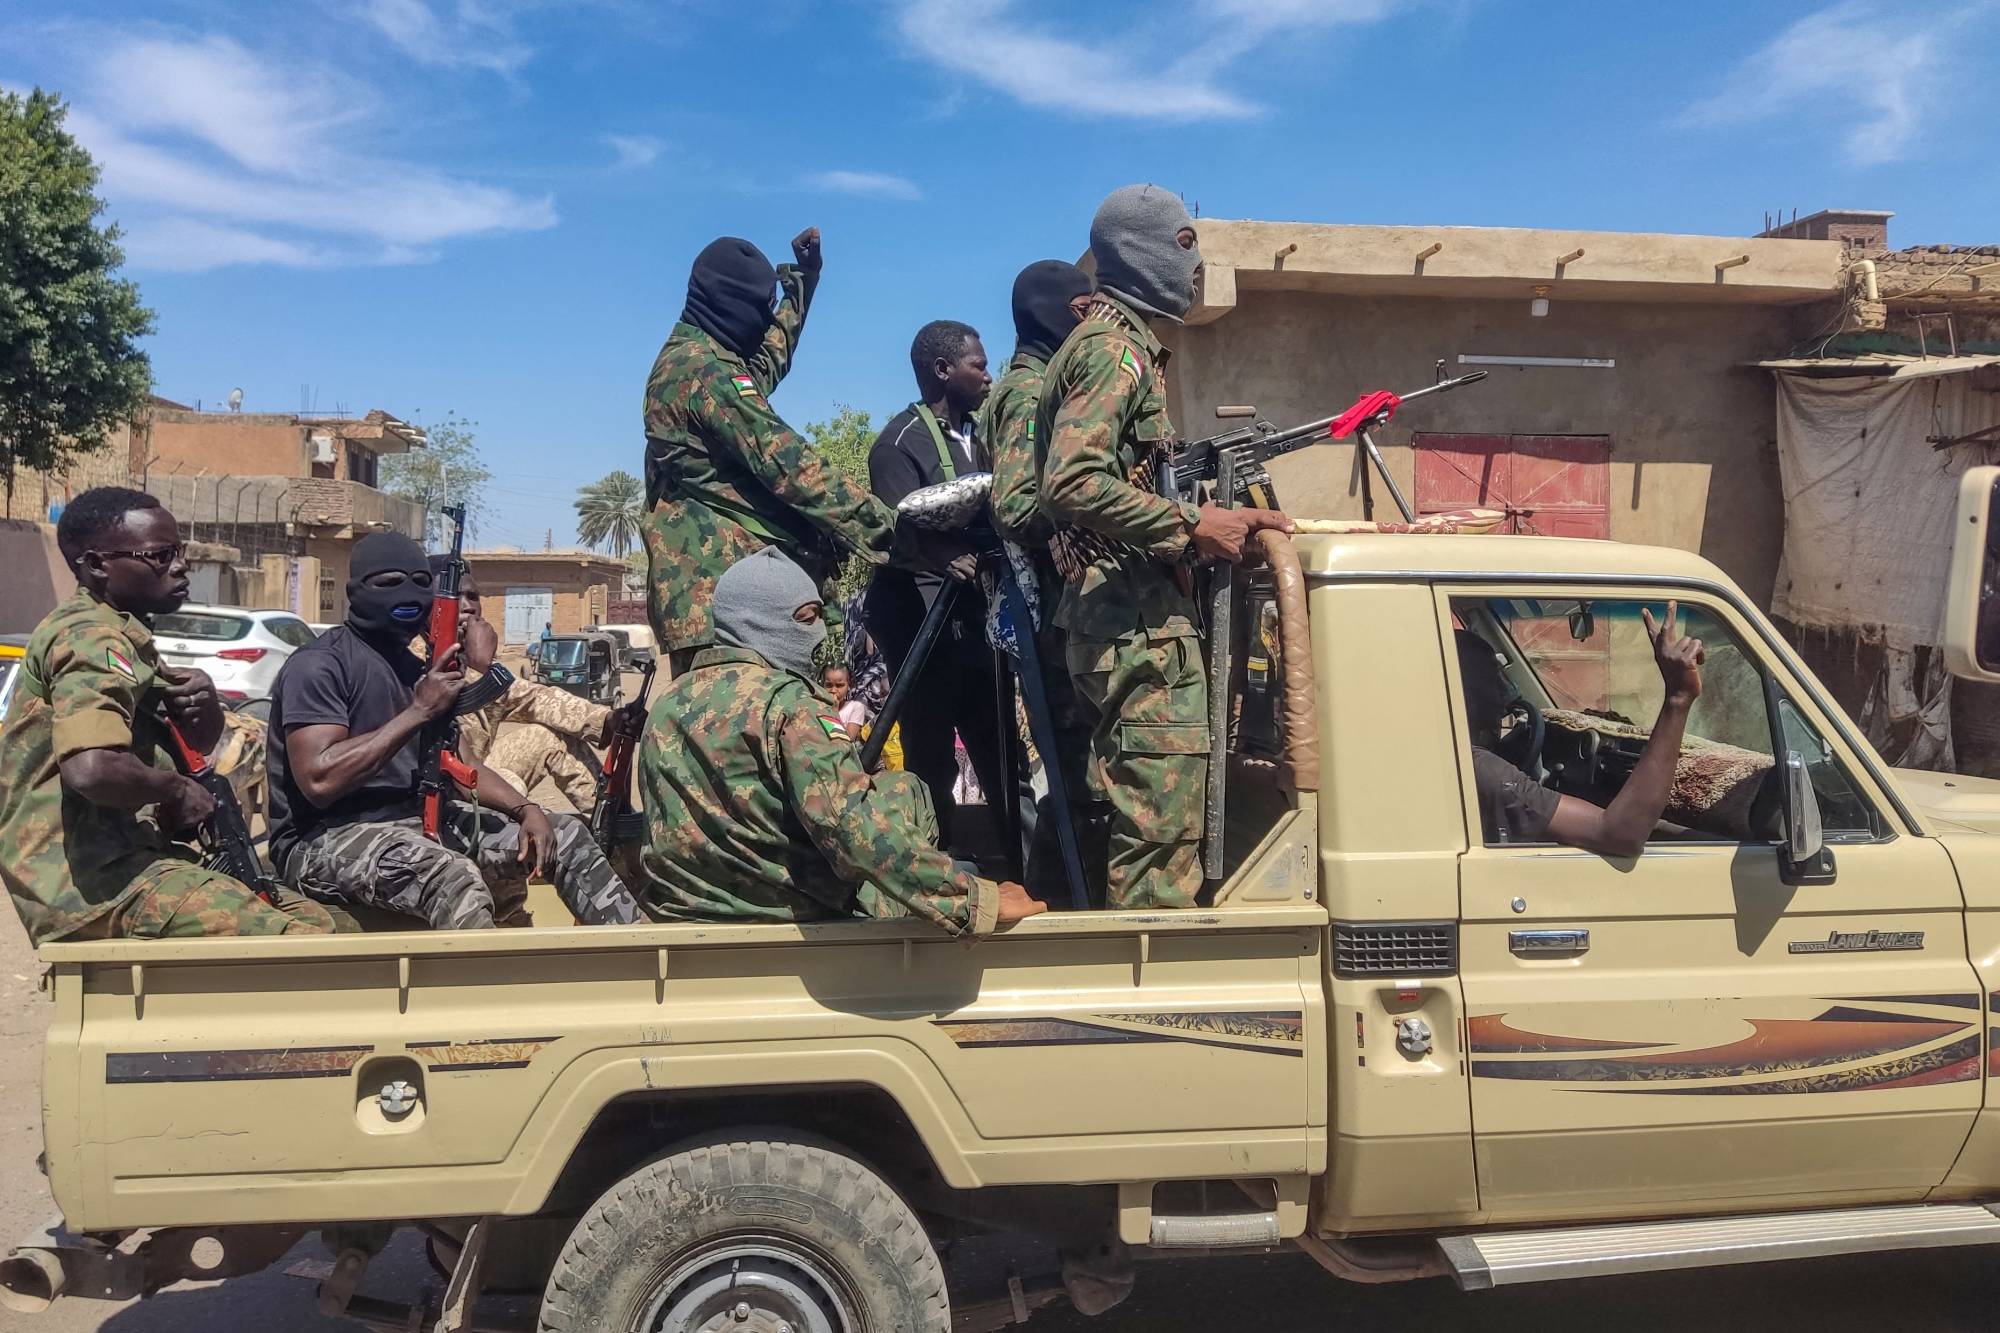 ما هو المطلوب دولياً وإقليمياً لإيقاف حرب السودان؟